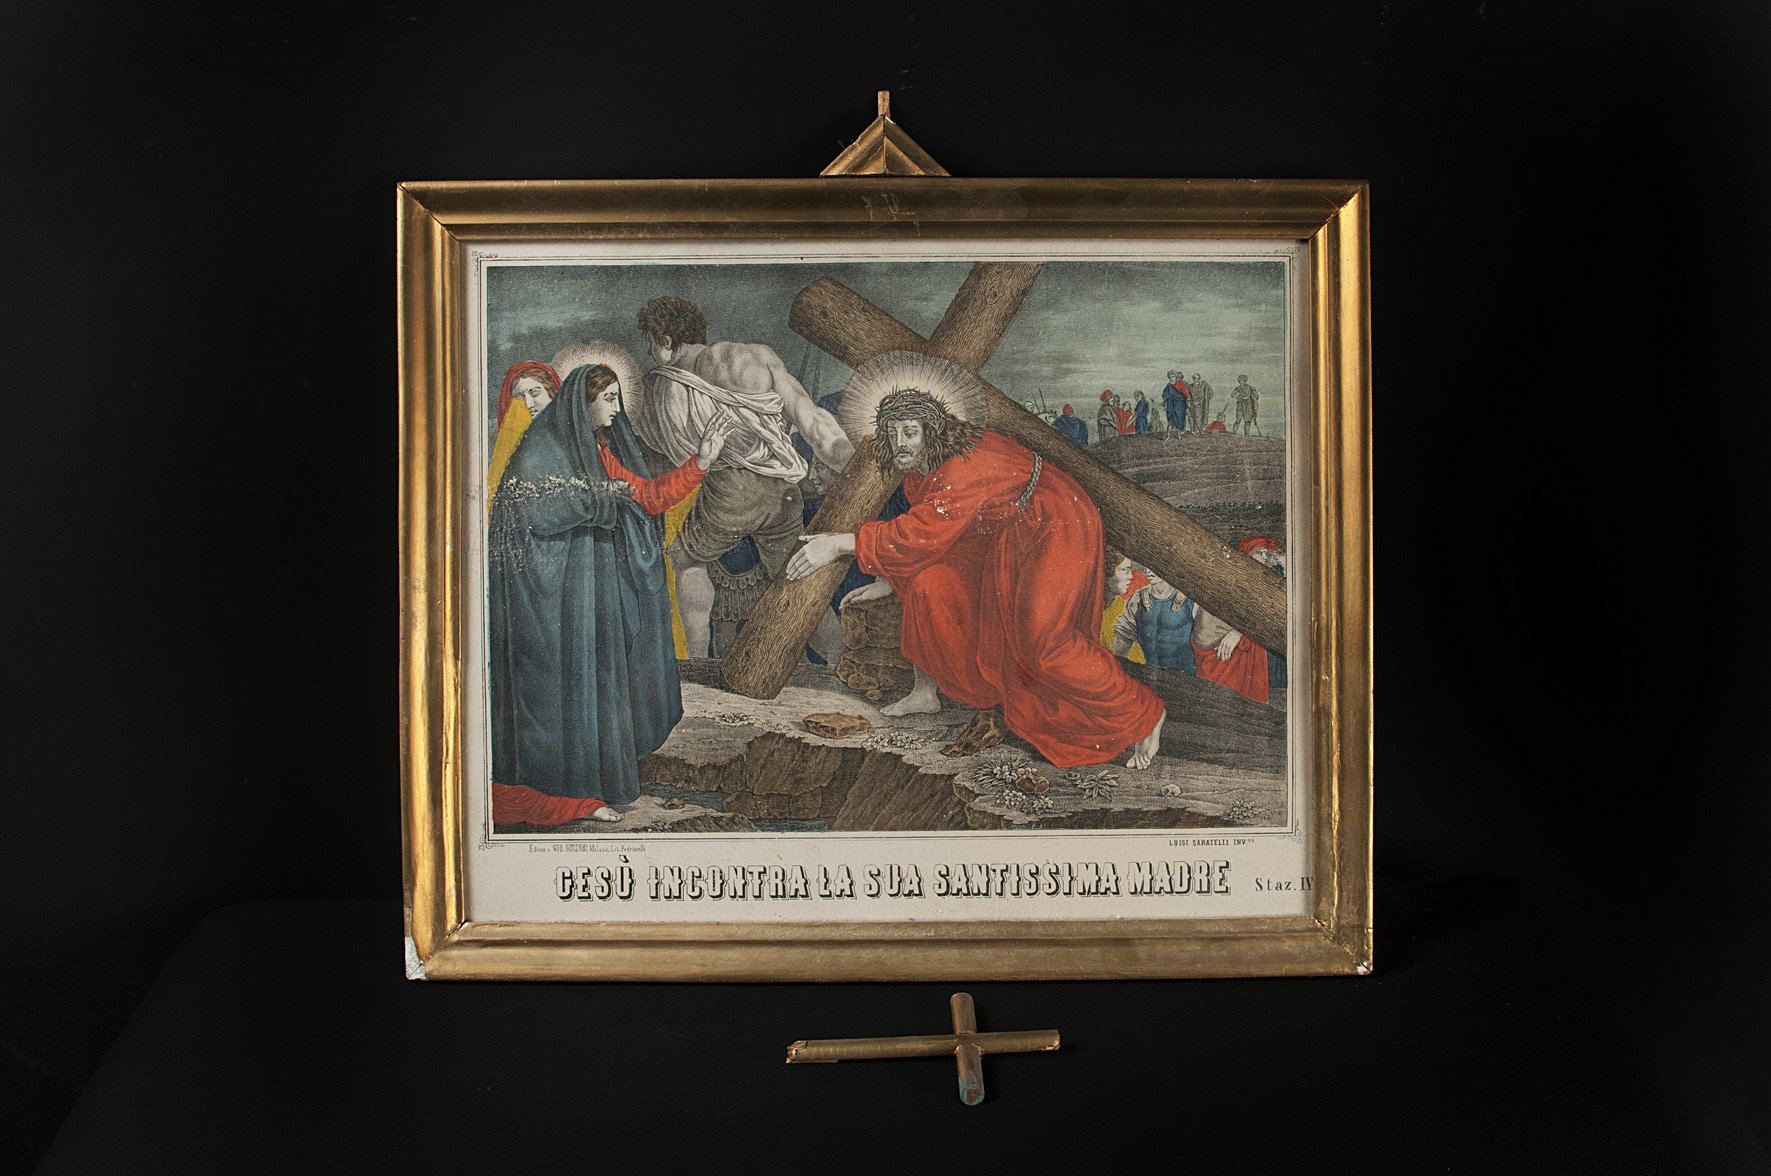 Stazione IV: Gesù incontra la sua santissim madre (stazione di Via Crucis, serie) di Sabatelli Luigi, Pedrinelli - ambito Italia centro-settentrionale (seconda metà sec. XIX)